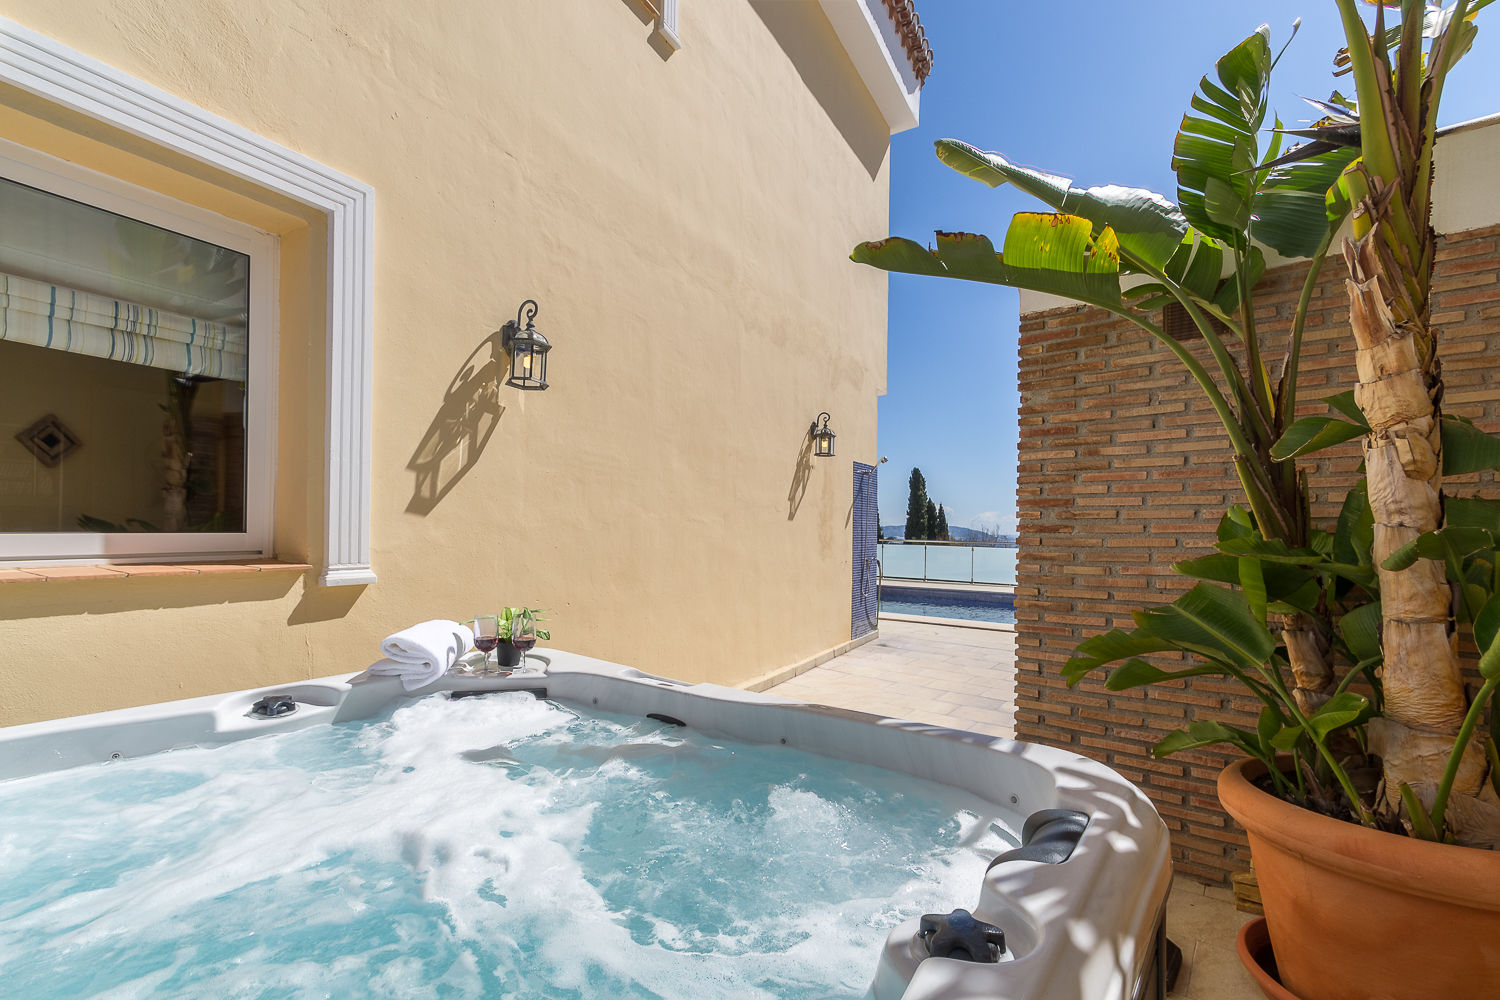 Bañera de hidromasaje Home & Haus | Home Staging & Fotografía Piletas mediterráneas